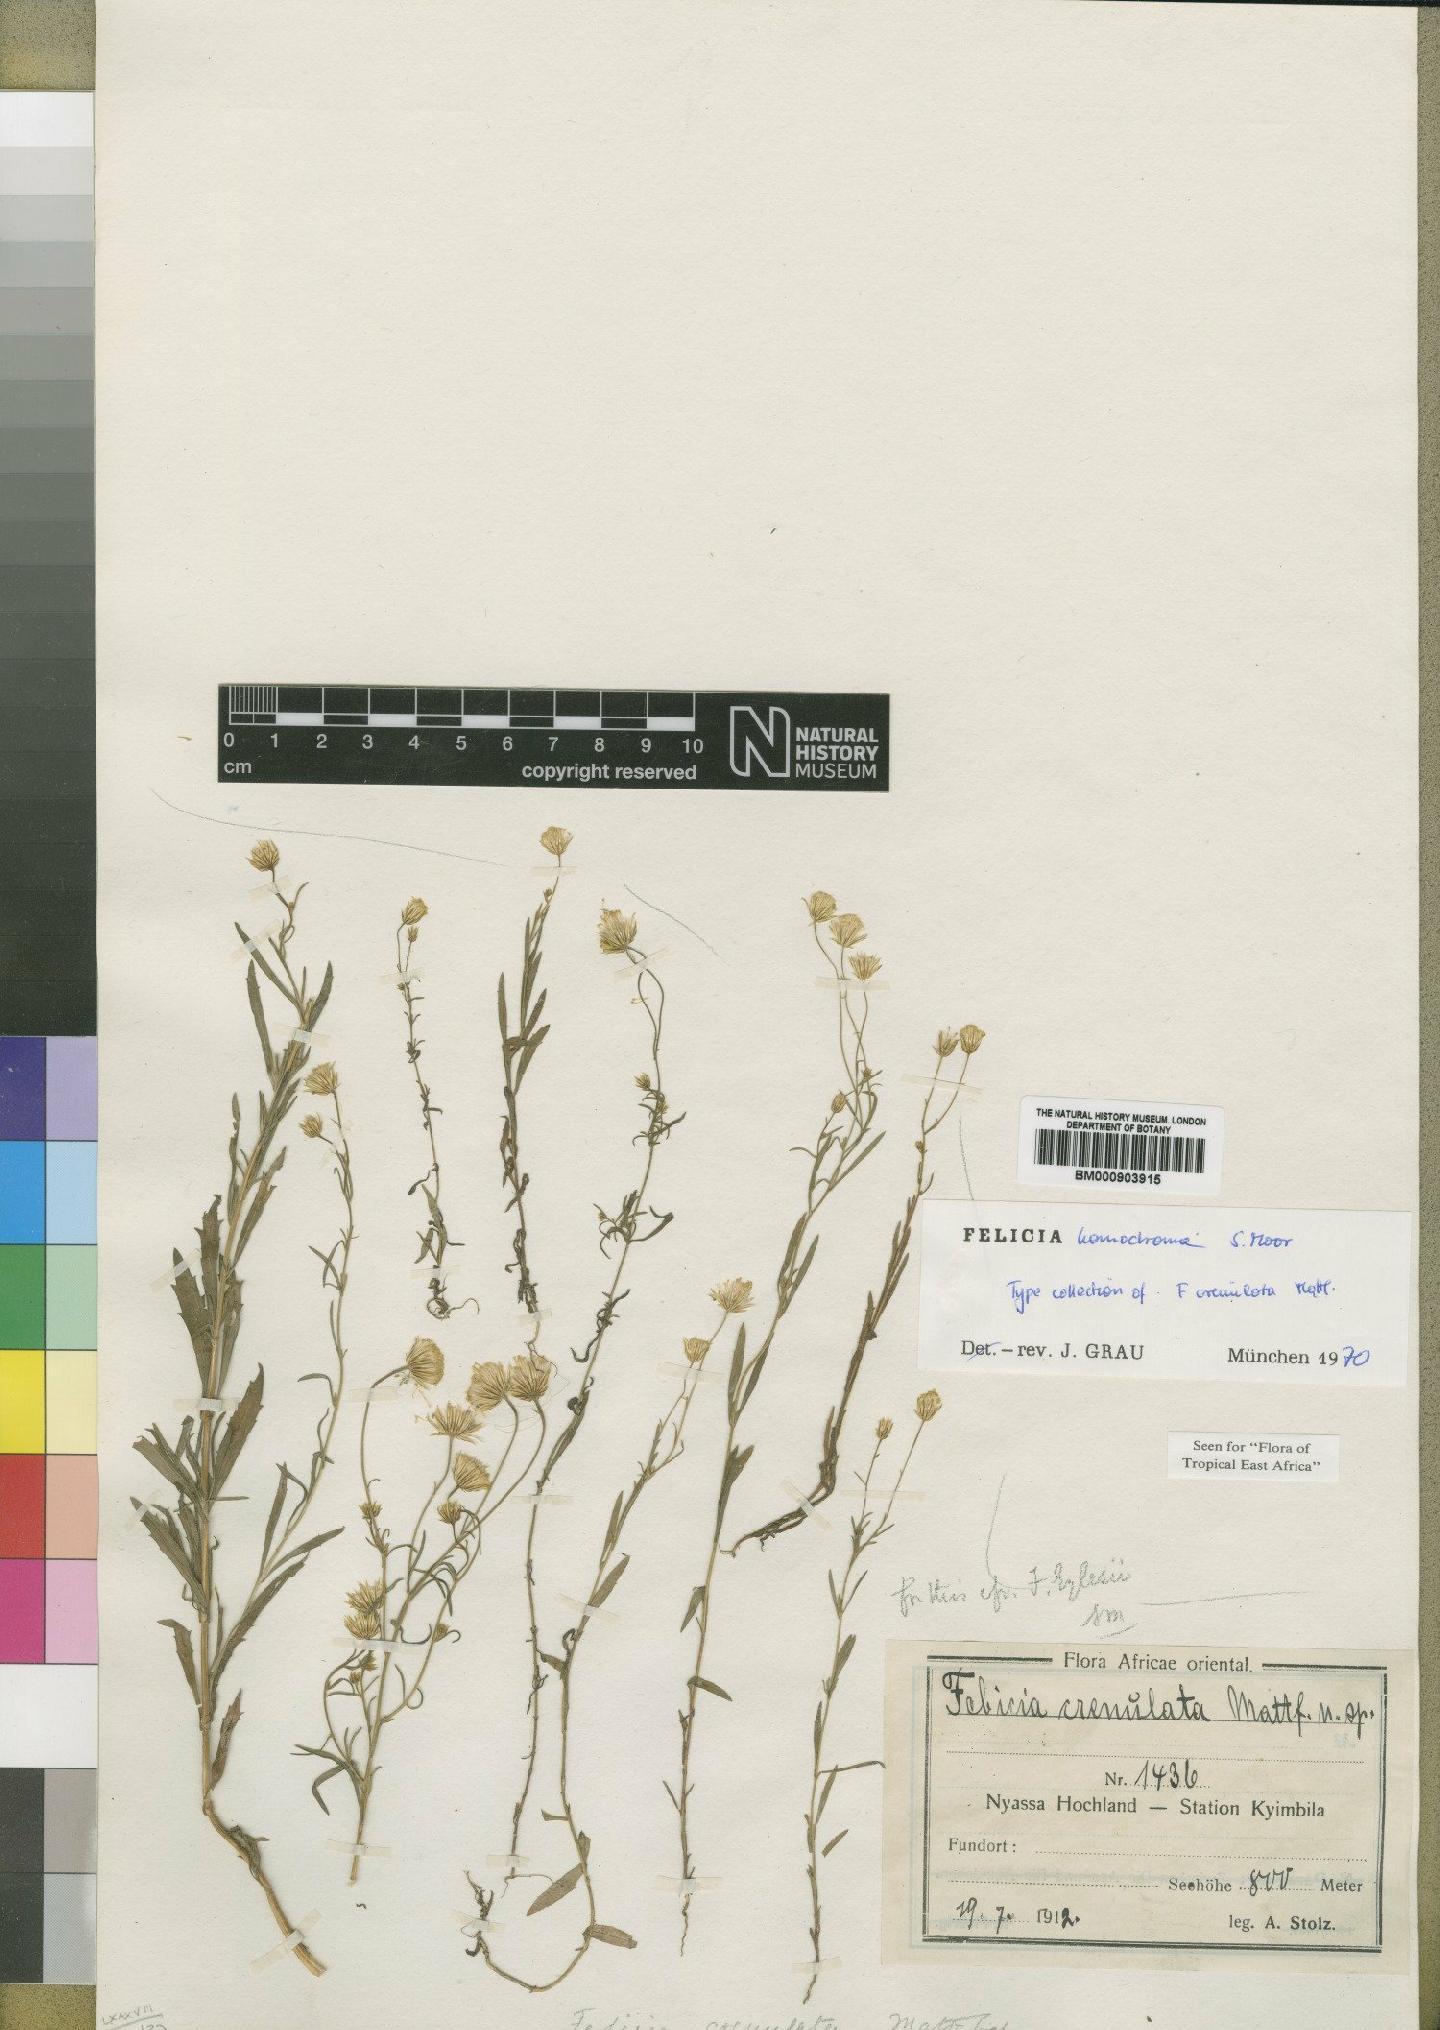 To NHMUK collection (Felicia boehmii subsp. homochroma (Moore) Grau; Type; NHMUK:ecatalogue:4528963)